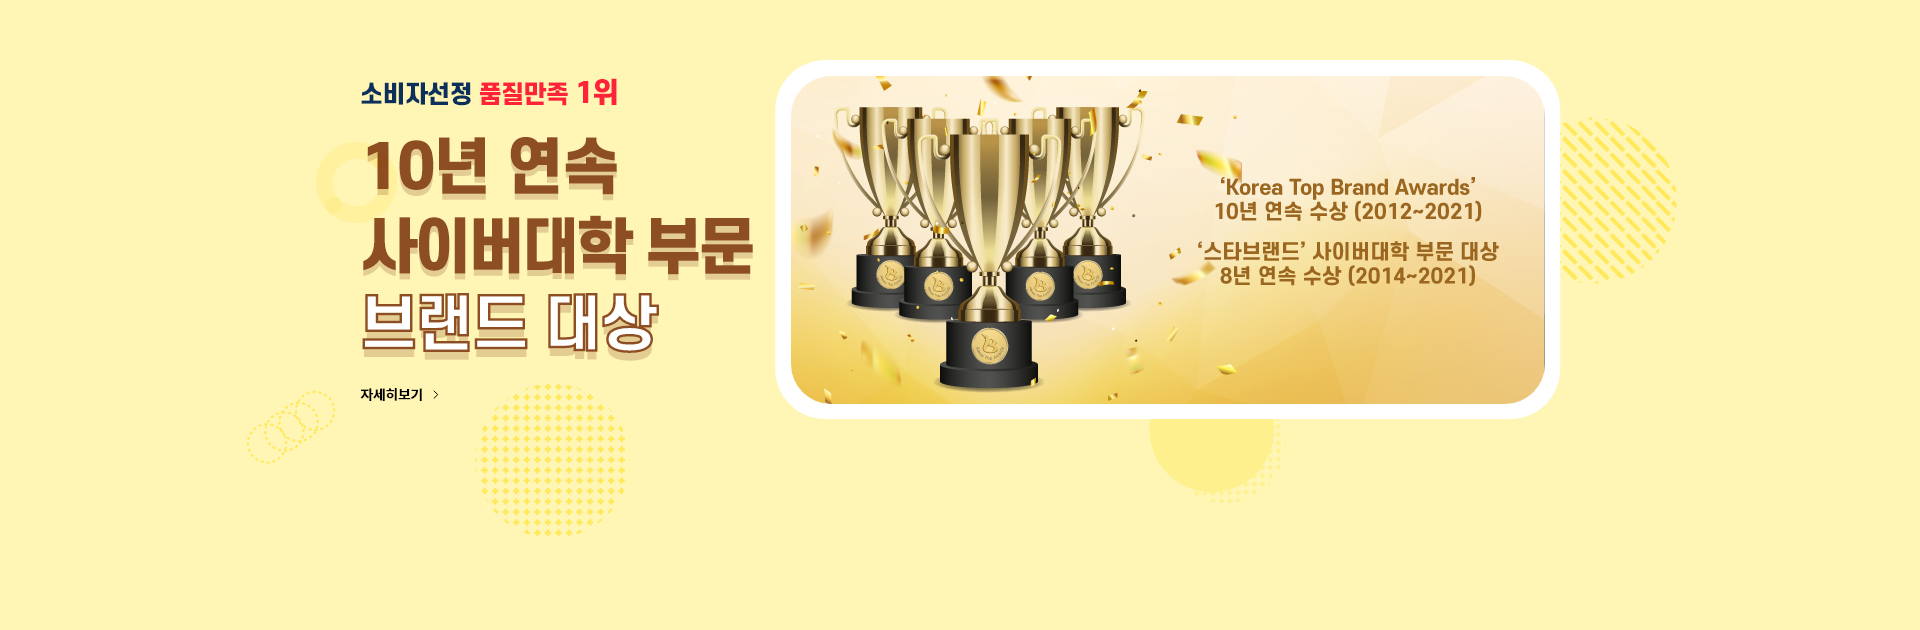 소비자 선정 품질만족 1위, 10년 연속 사이버대학 부문 브랜드 대상, 'Korea Top Brand Awards' 10년 연속 수상(2012년 ~ 2021년), '스타브랜드' 사이버대학 부문 대상 8년 연속 수상(2014년 ~ 2021년)